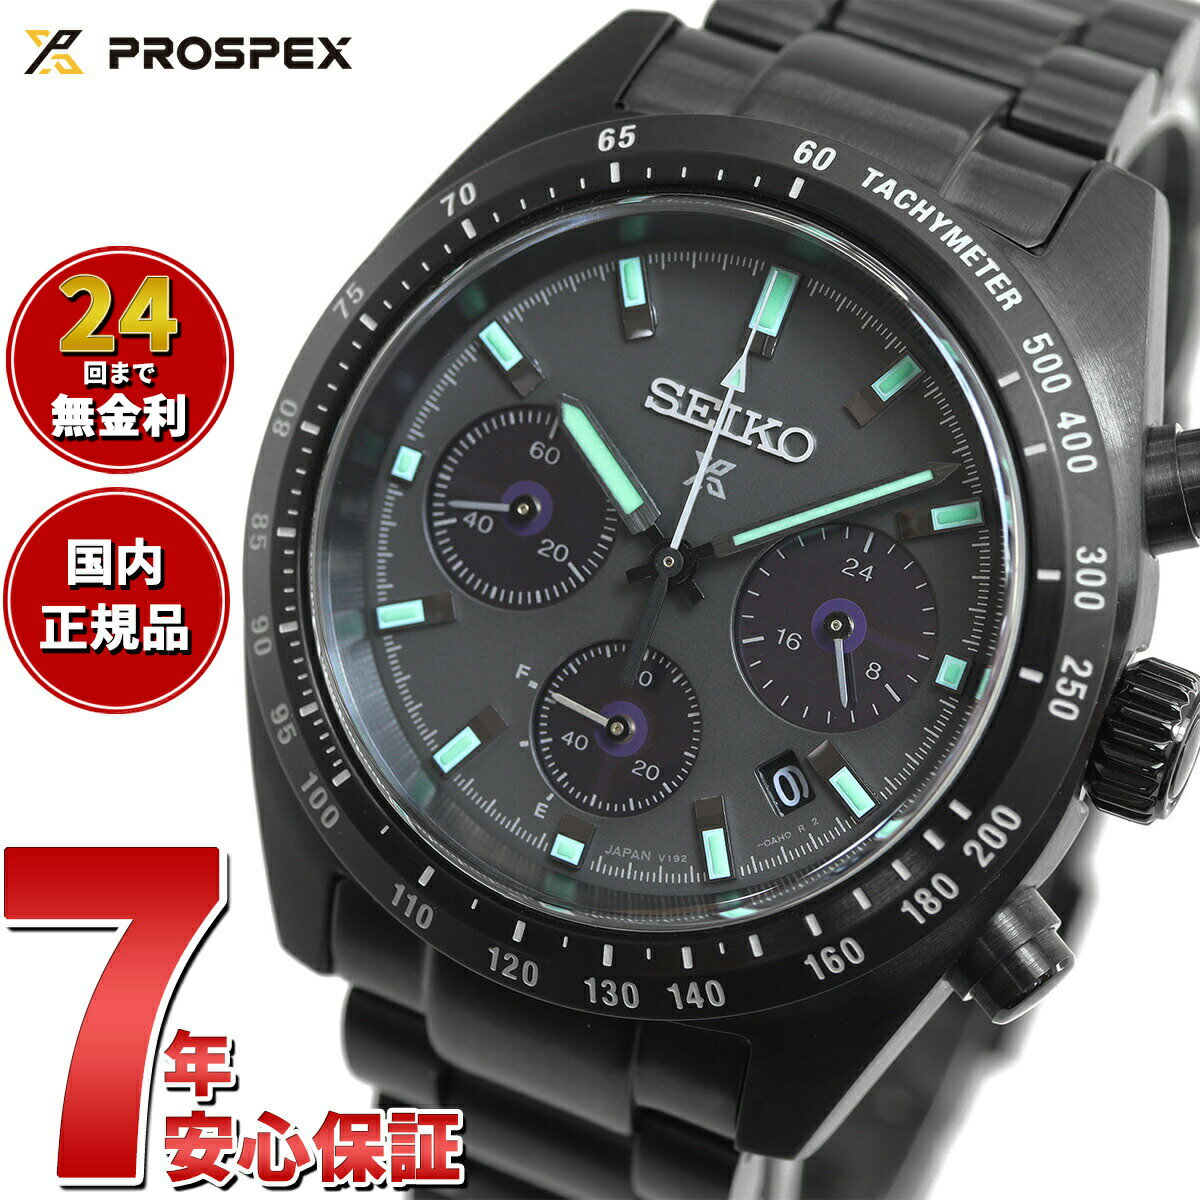 プロスペックス セイコー プロスペックス SBDL103 スピードタイマー ソーラー クロノグラフ メンズ 腕時計 オールブラック 日本製 SEIKO PROSPEX SPEEDTIMER